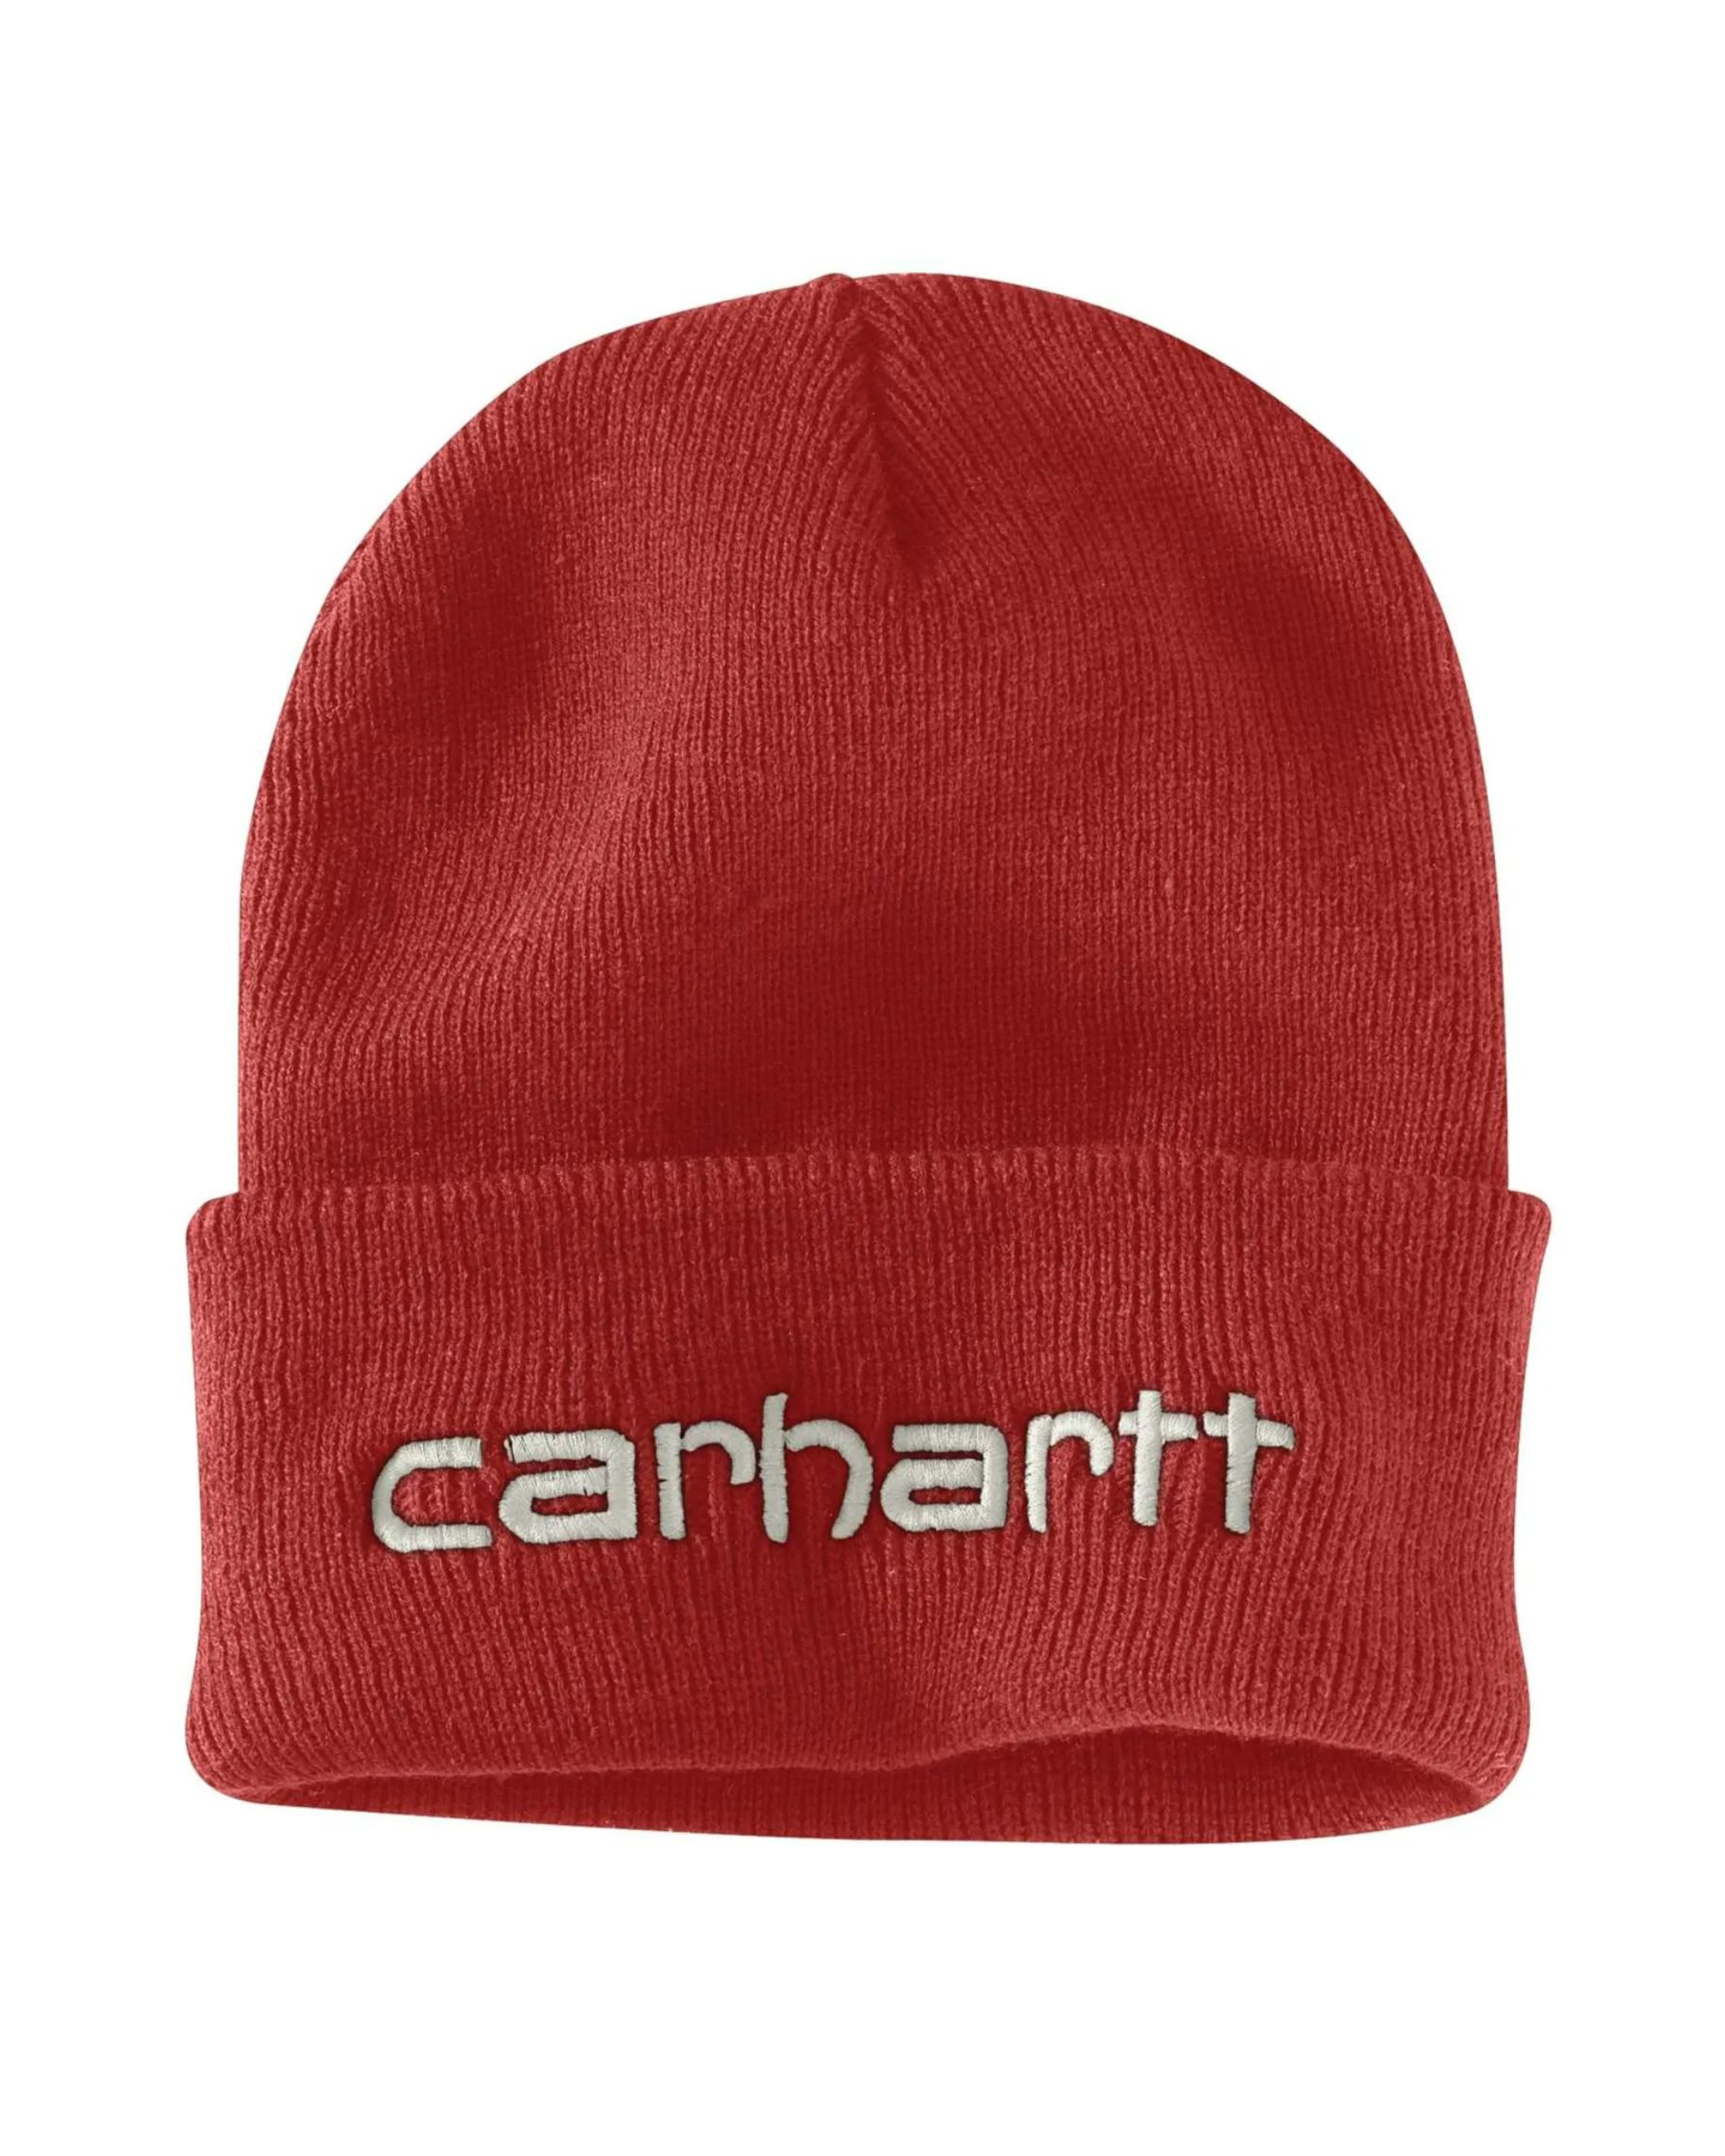 CARHARTT® Teller hue med logo - Unisex - Rød